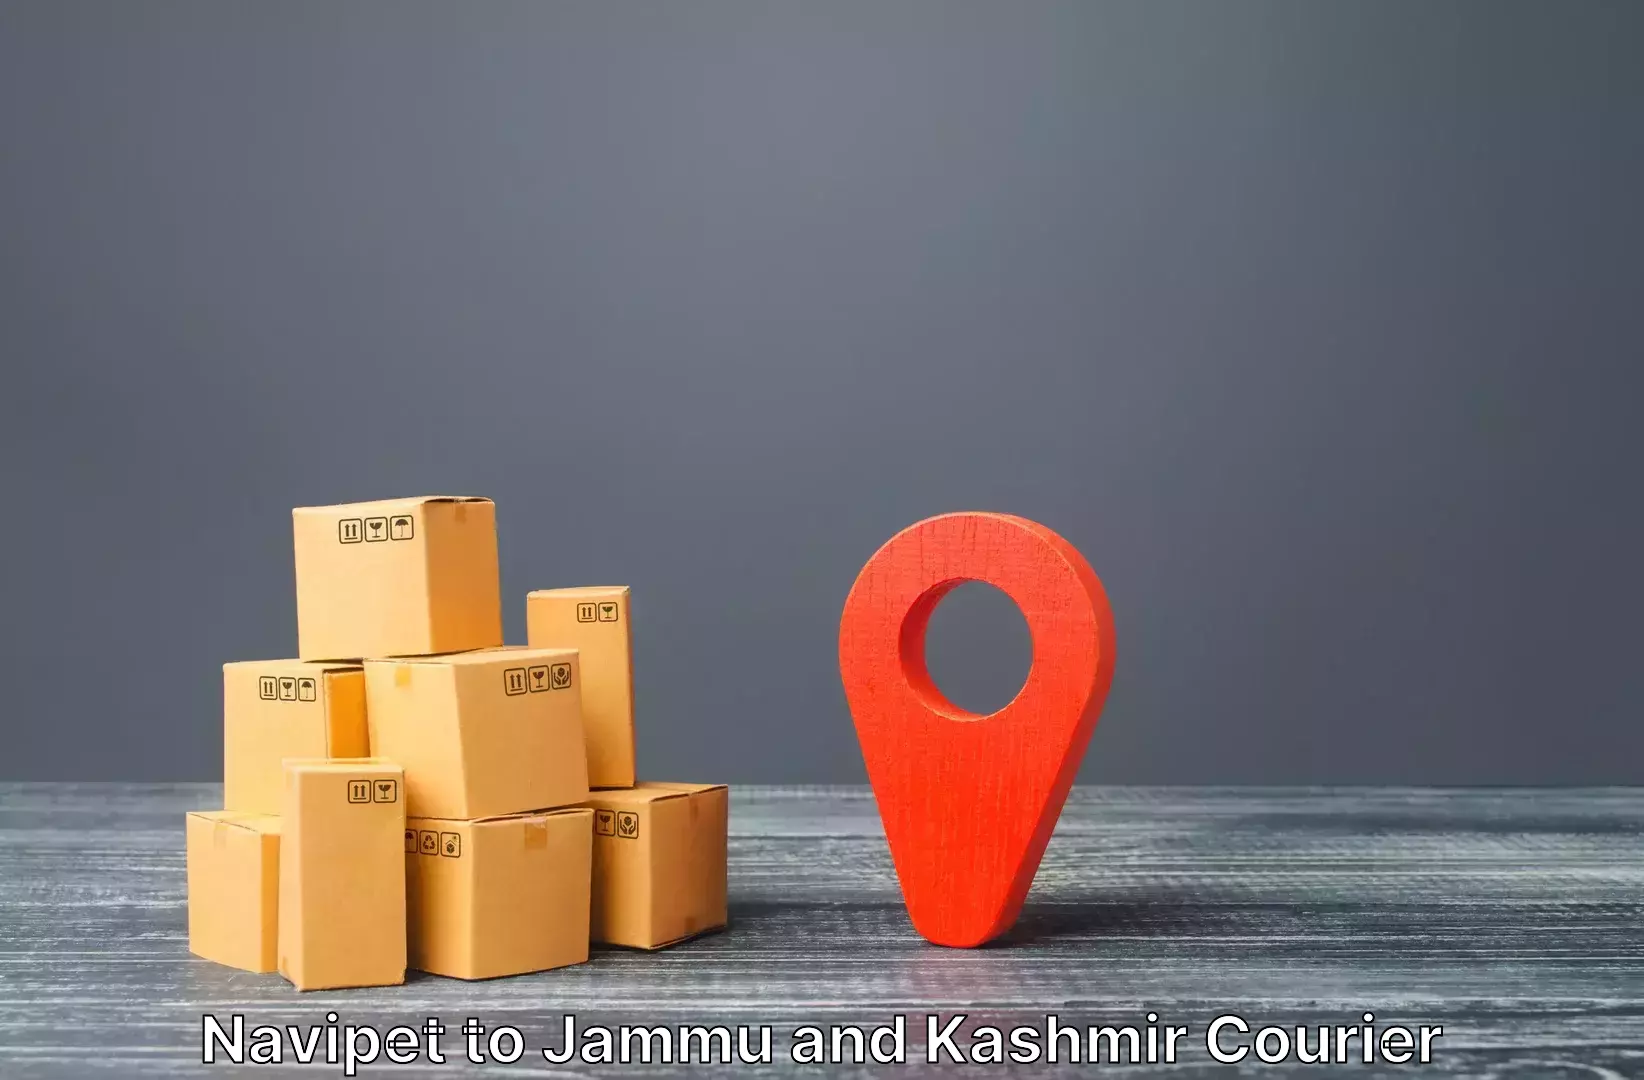 Door to door luggage delivery Navipet to Srinagar Kashmir